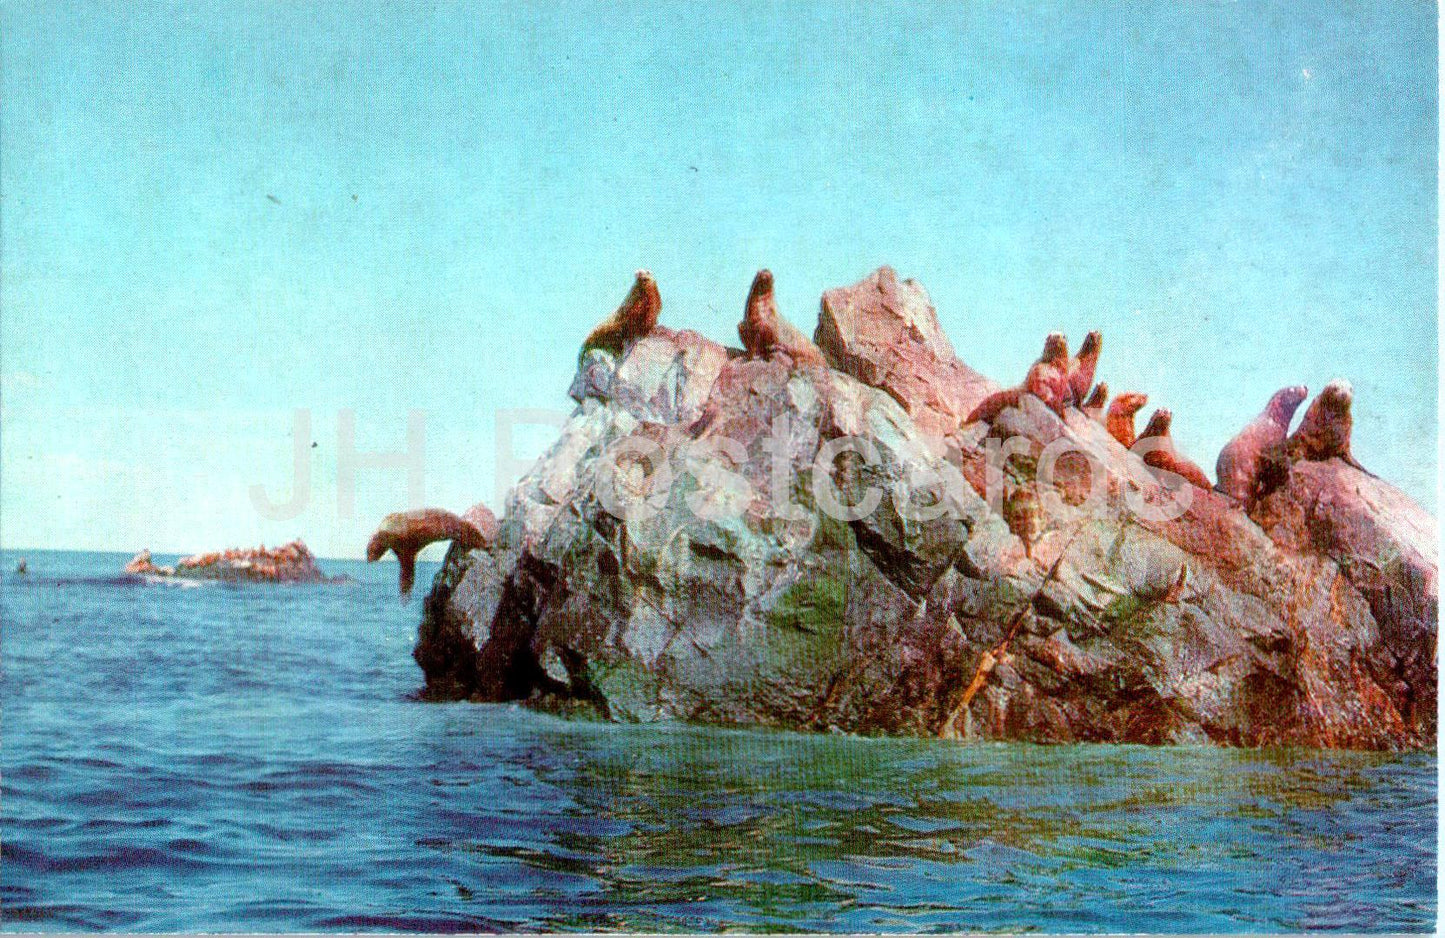 Koryak Autonomous District - Sea lion stones near Verkhoturov Island - animals - 1988 - Russia USSR - unused